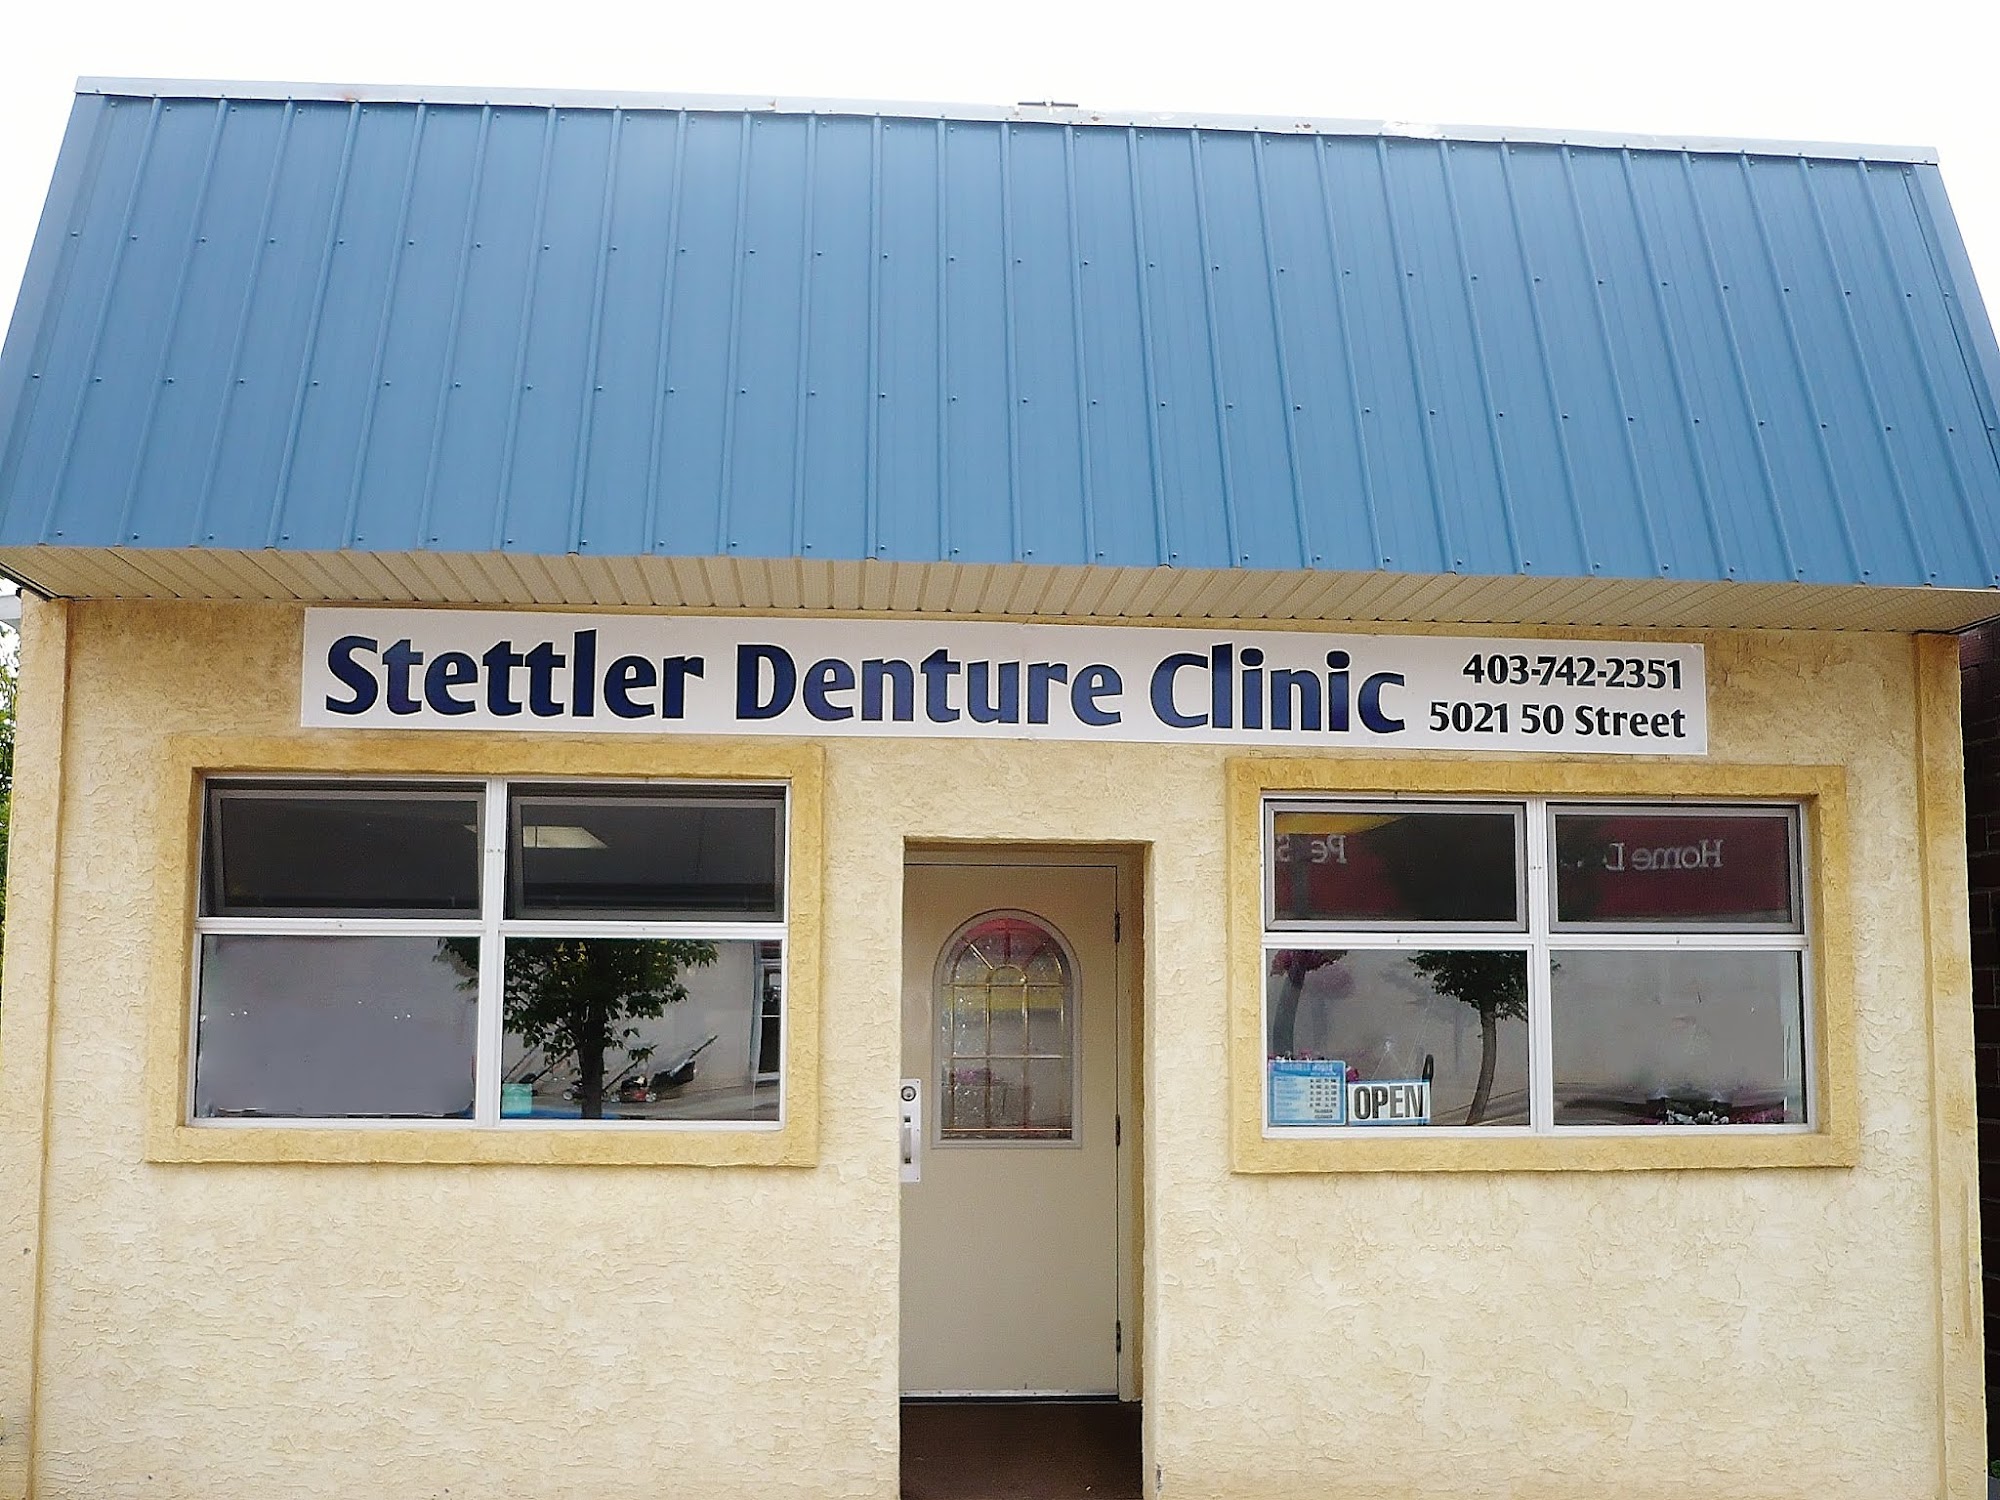 Stettler Denture Clinic 4828 50 St, Stettler Alberta T0C 2L2